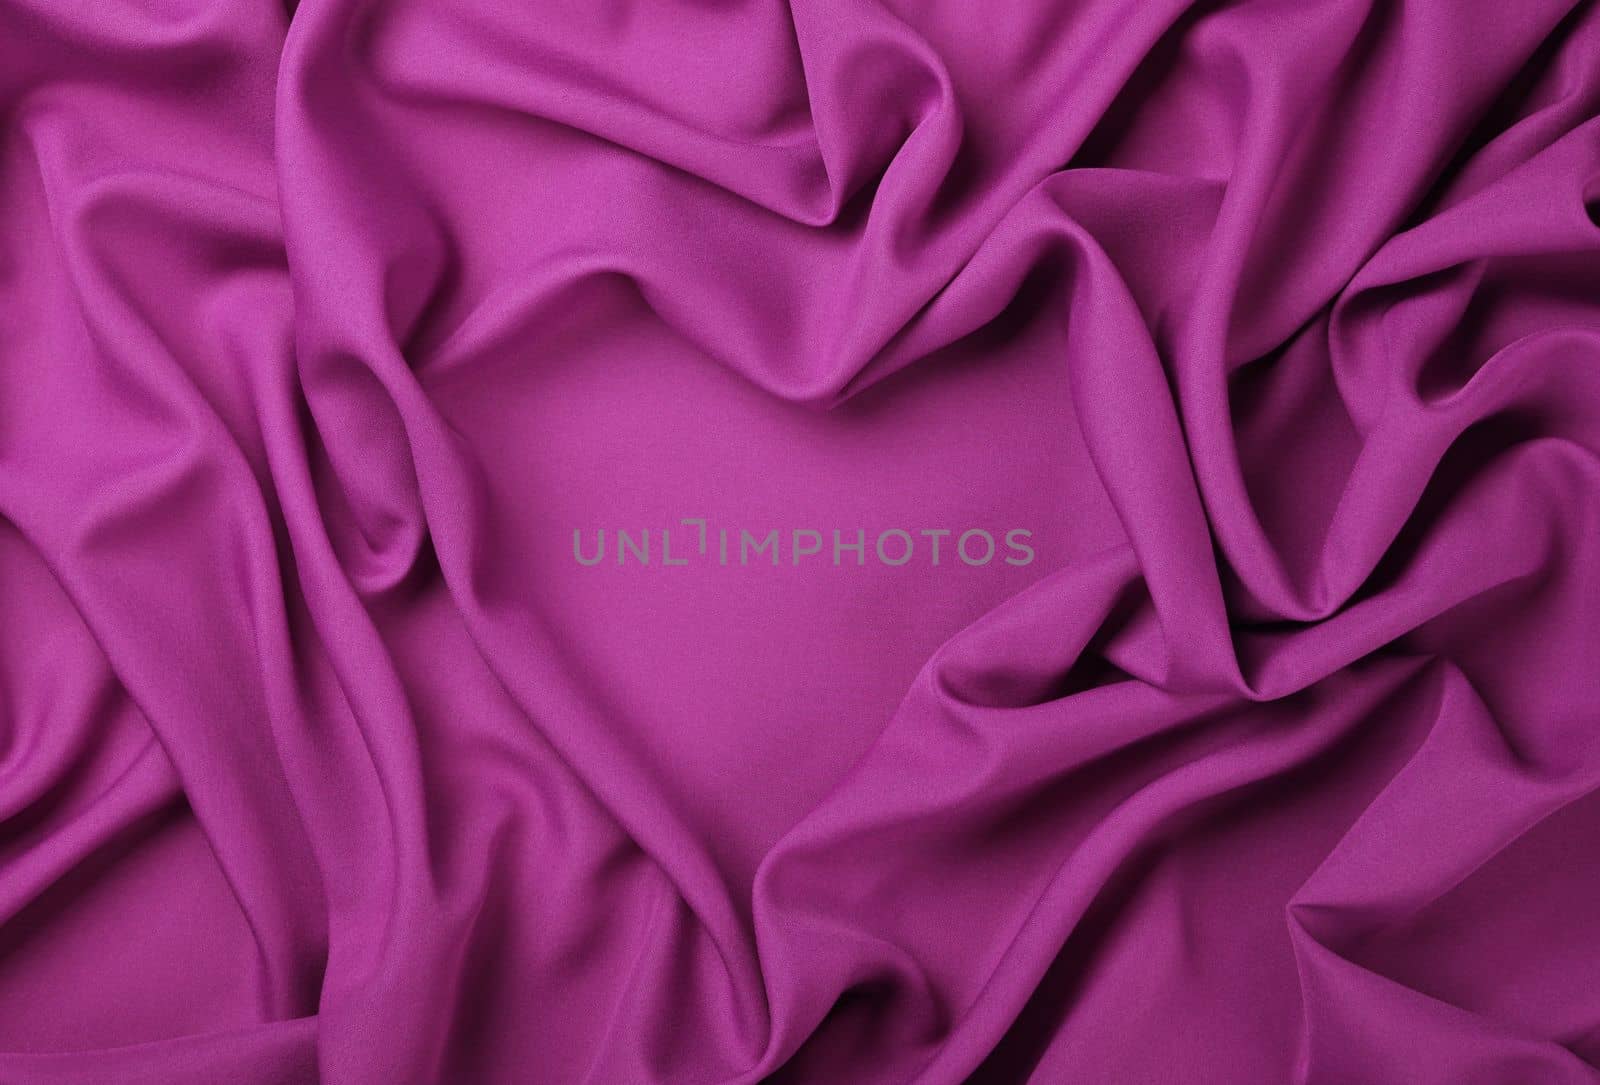 Pink heart shape textile fold pleats background by BreakingTheWalls